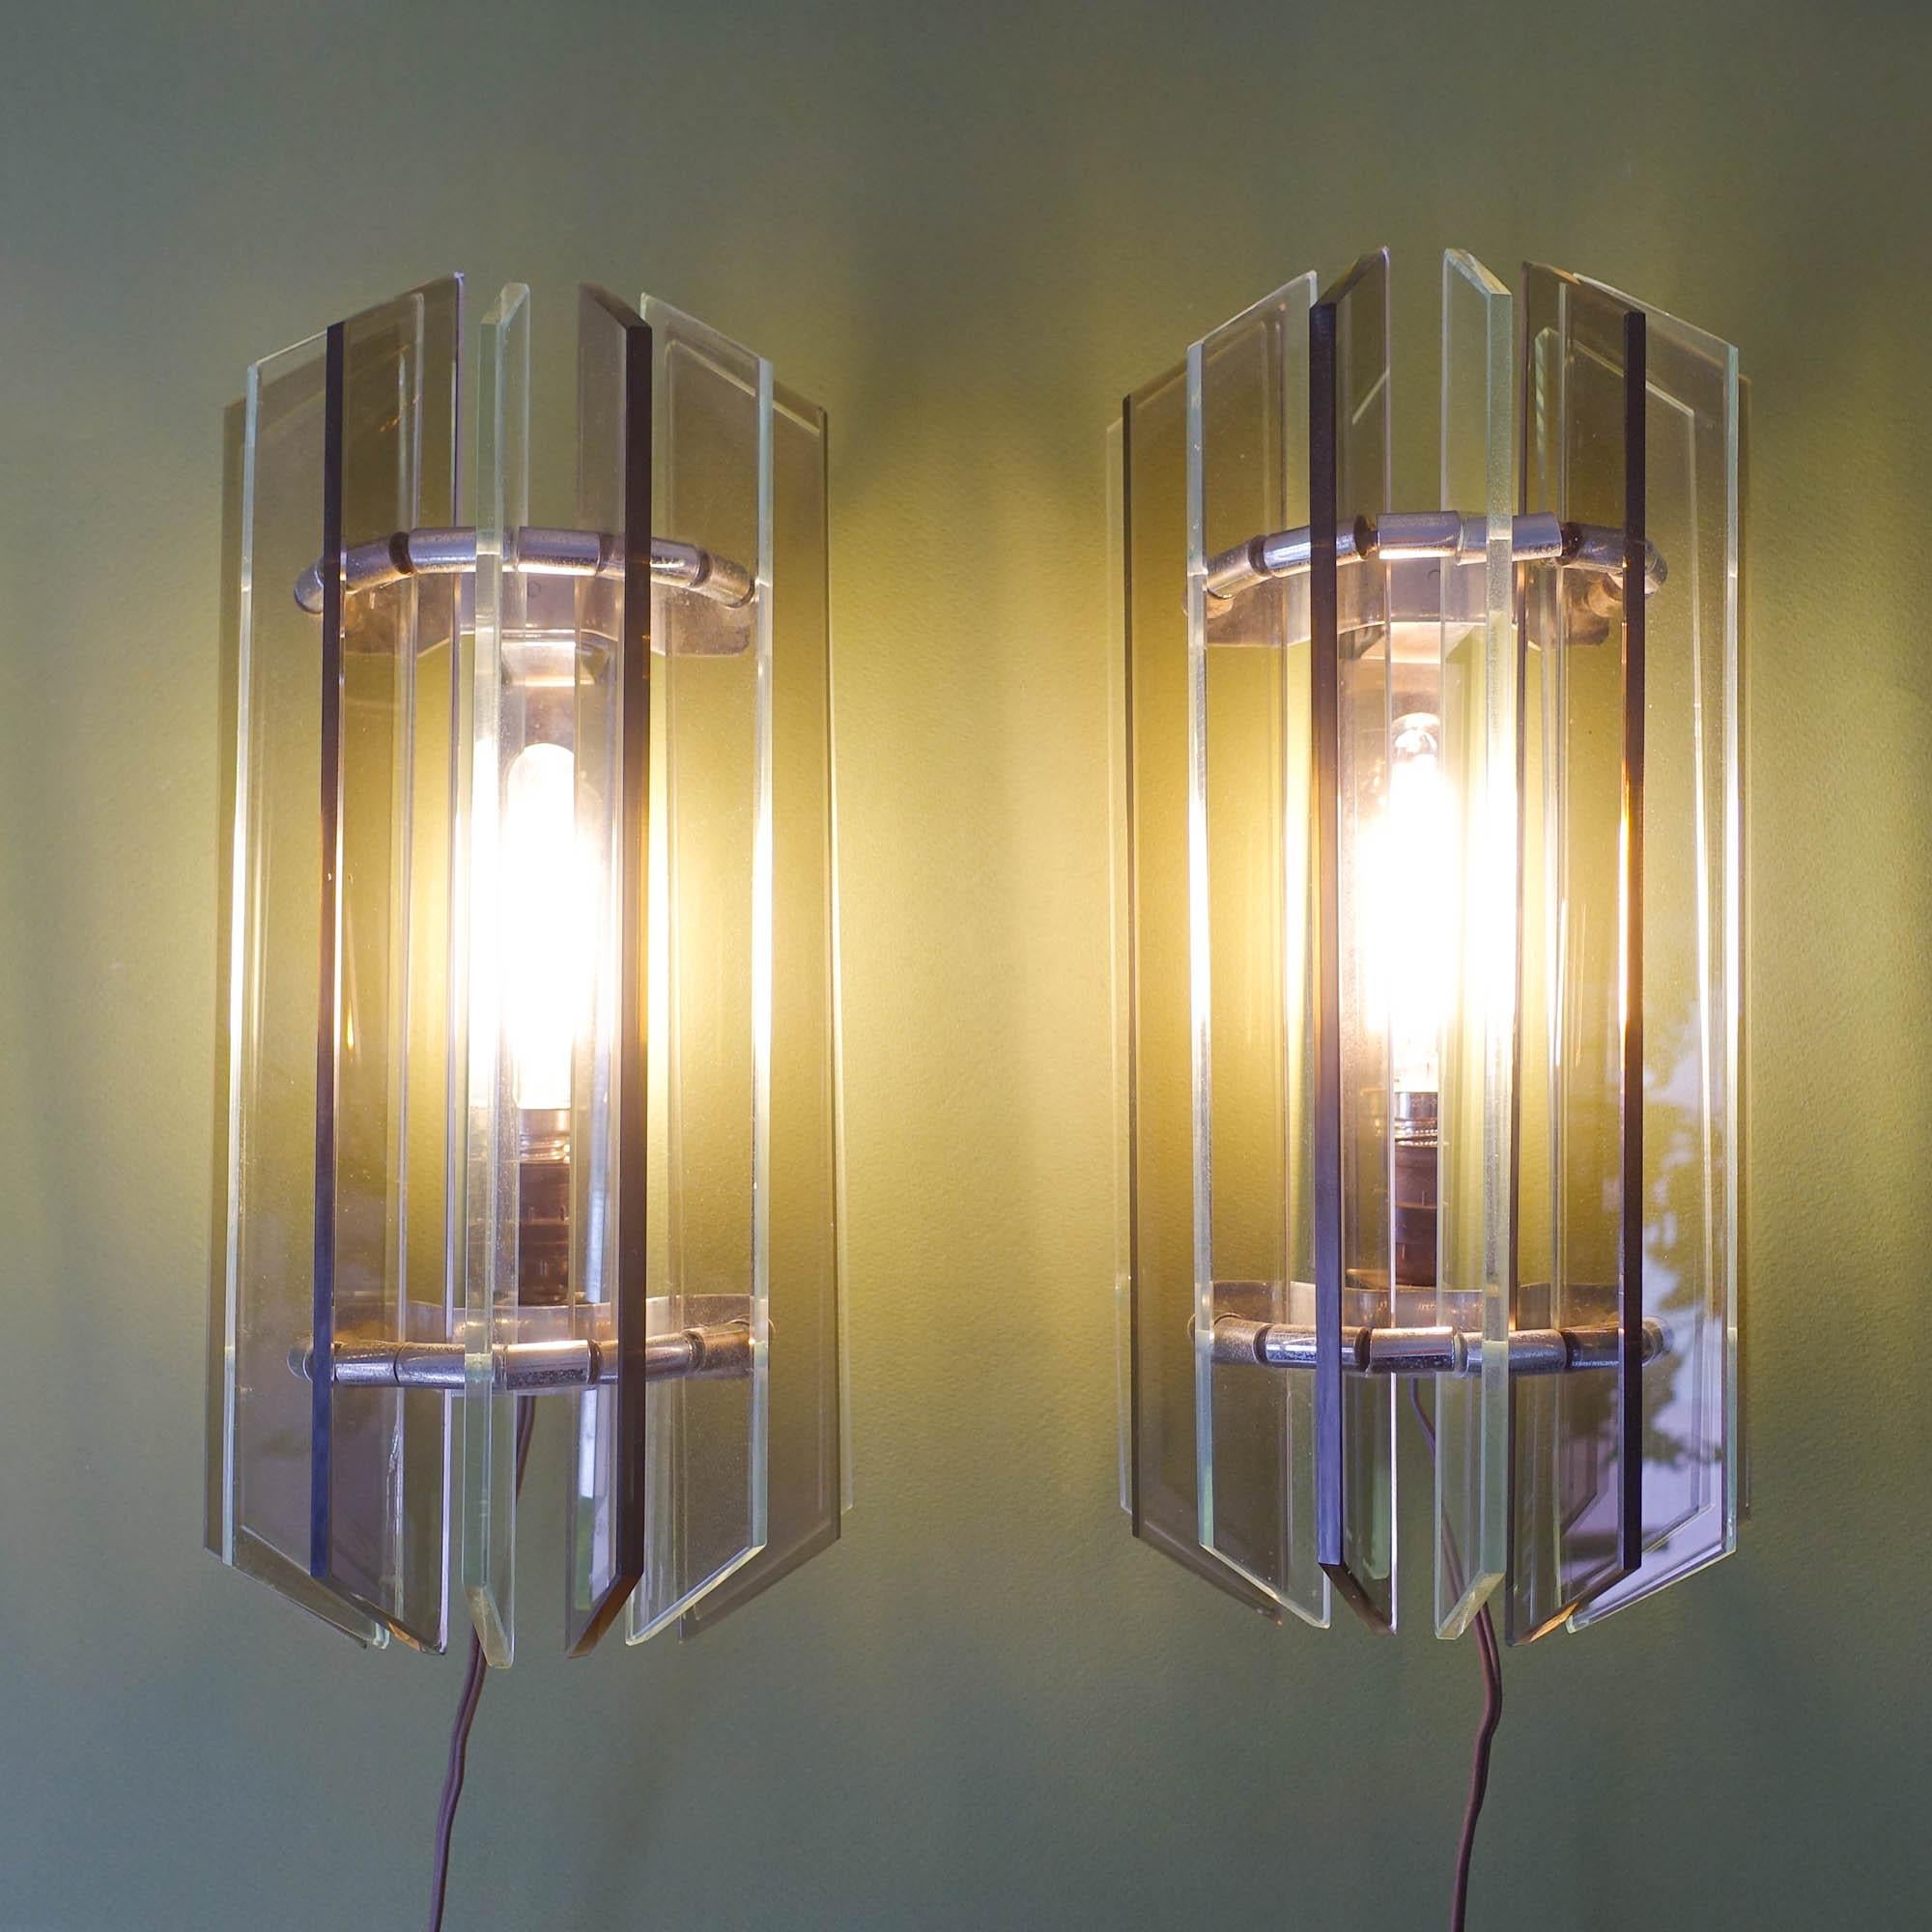 Dieses Paar Wandleuchter wurde in den 1970er Jahren in Italien im Stil von Veca entworfen und hergestellt. Jede Leuchte besteht aus 9 Glasscheiben aus klarem und geräuchertem Glas, die an einem kleinen verchromten Metallrahmen befestigt sind. In